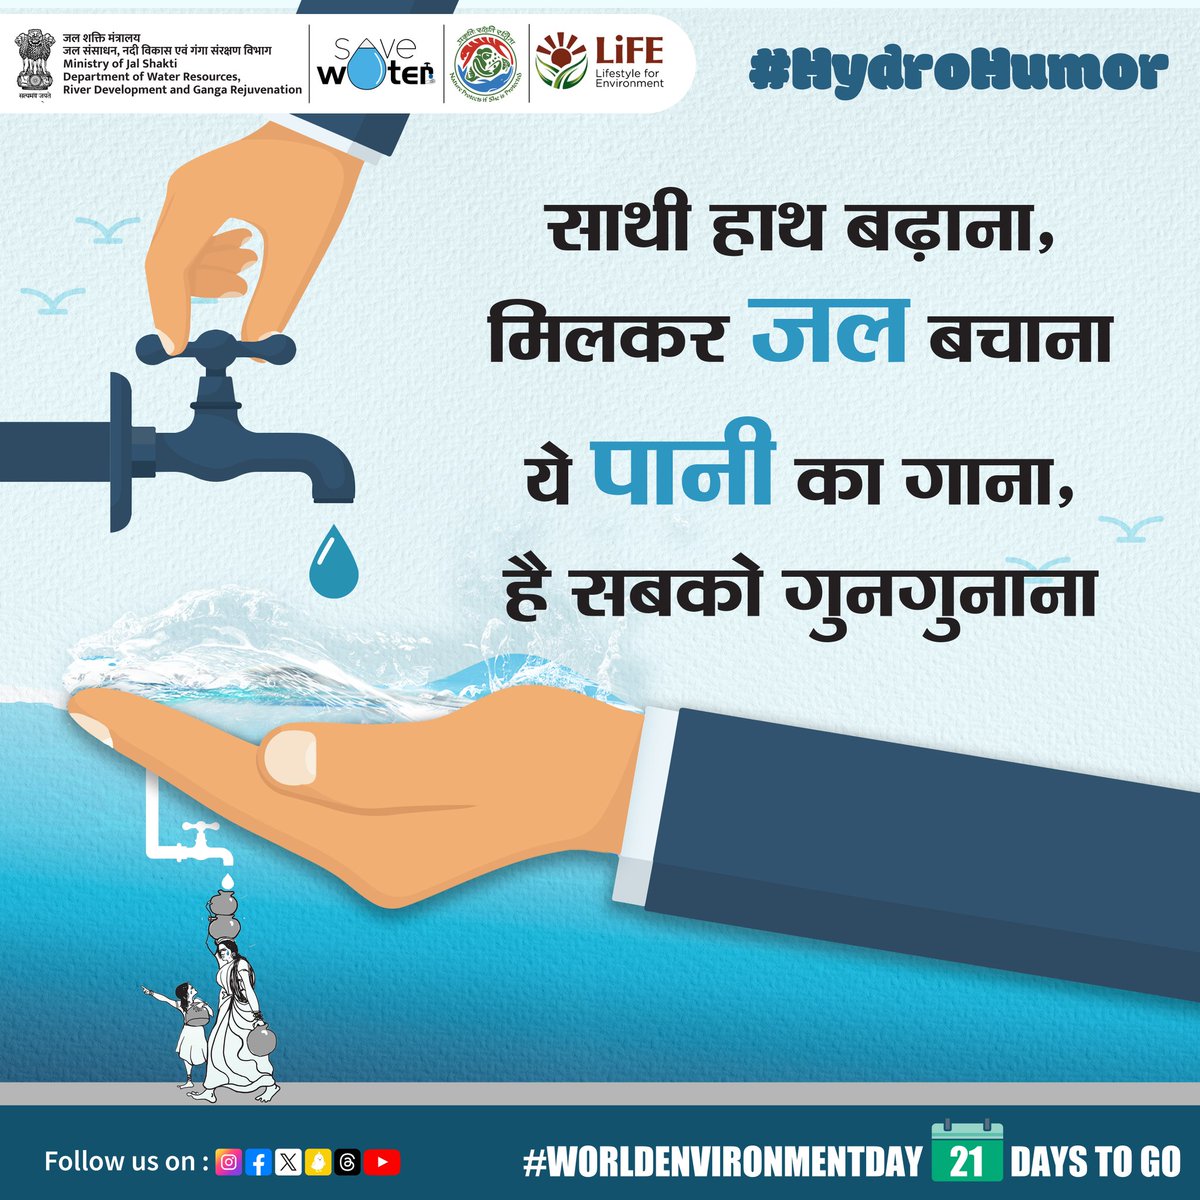 जल ही जीवन है, जल अनमोल है
जल हमारे जीवन का मूलाधार है। 
#hydrohumor #savewater #savelife #MissionLiFE #Sustainability #ProPlanetPeople